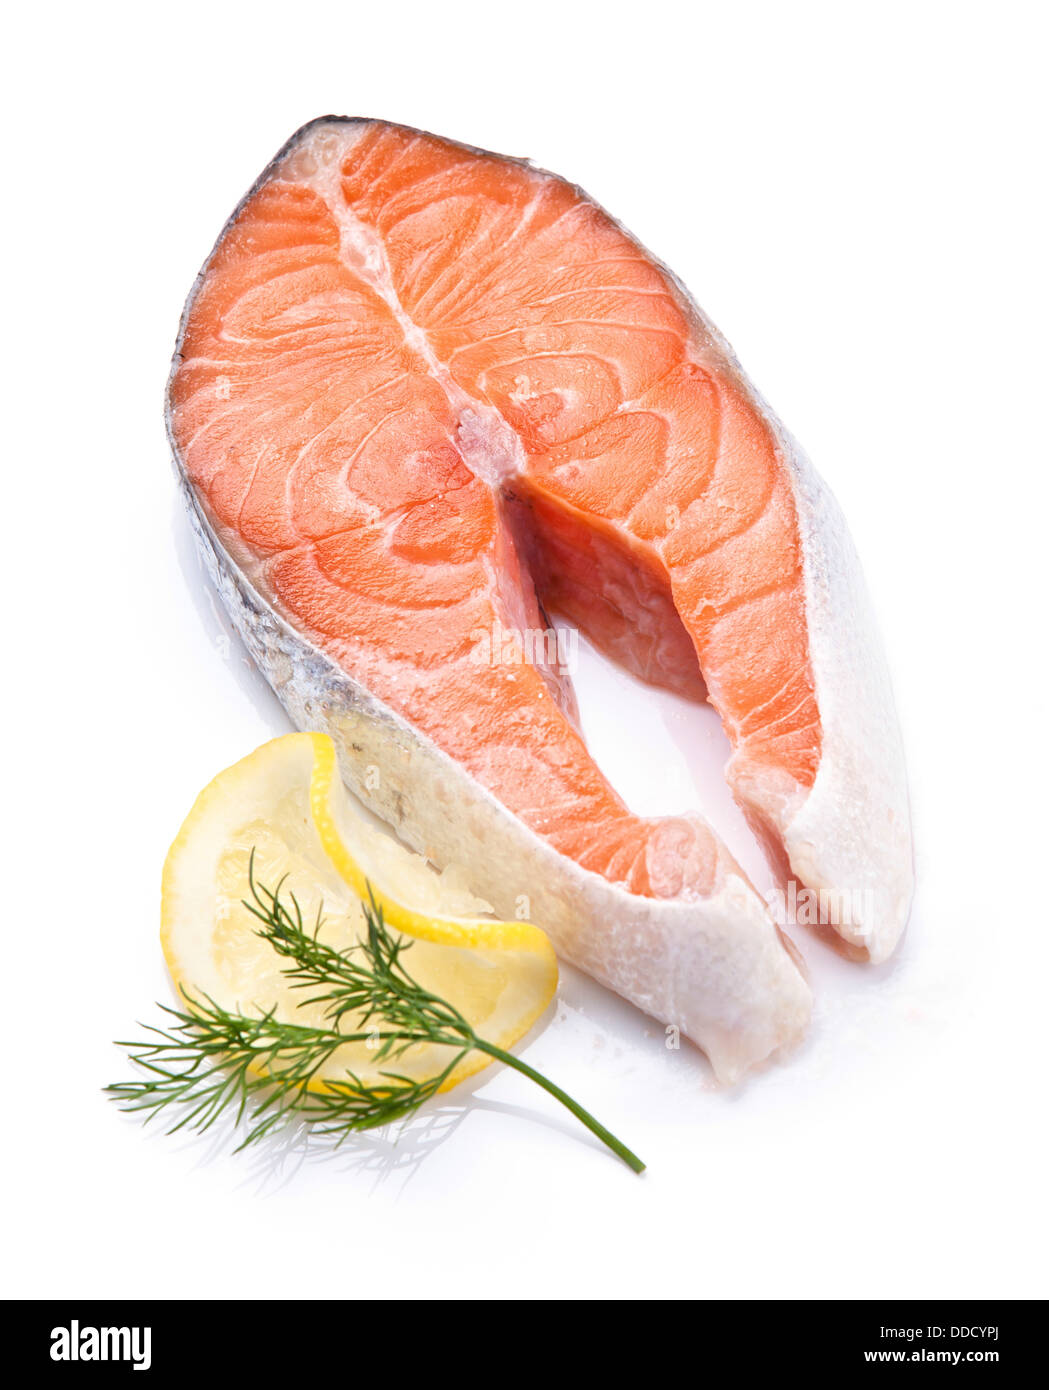 Norwegian salmon red fish on white plate Stock Photo